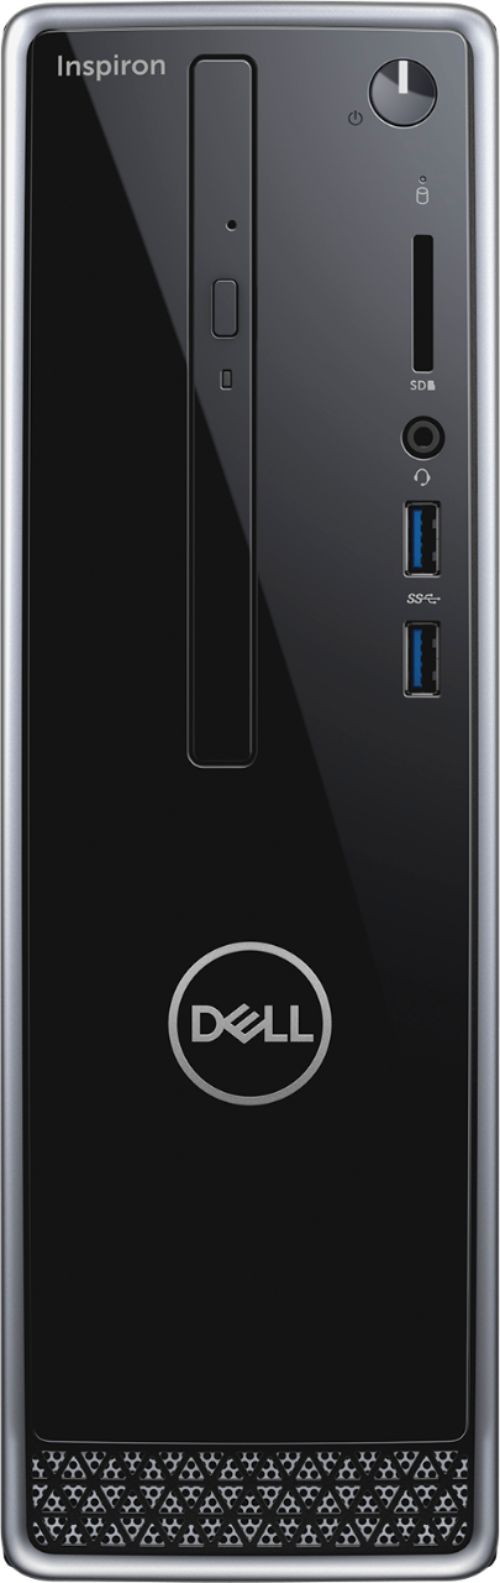 Dell Computer Desktops - Best Buy